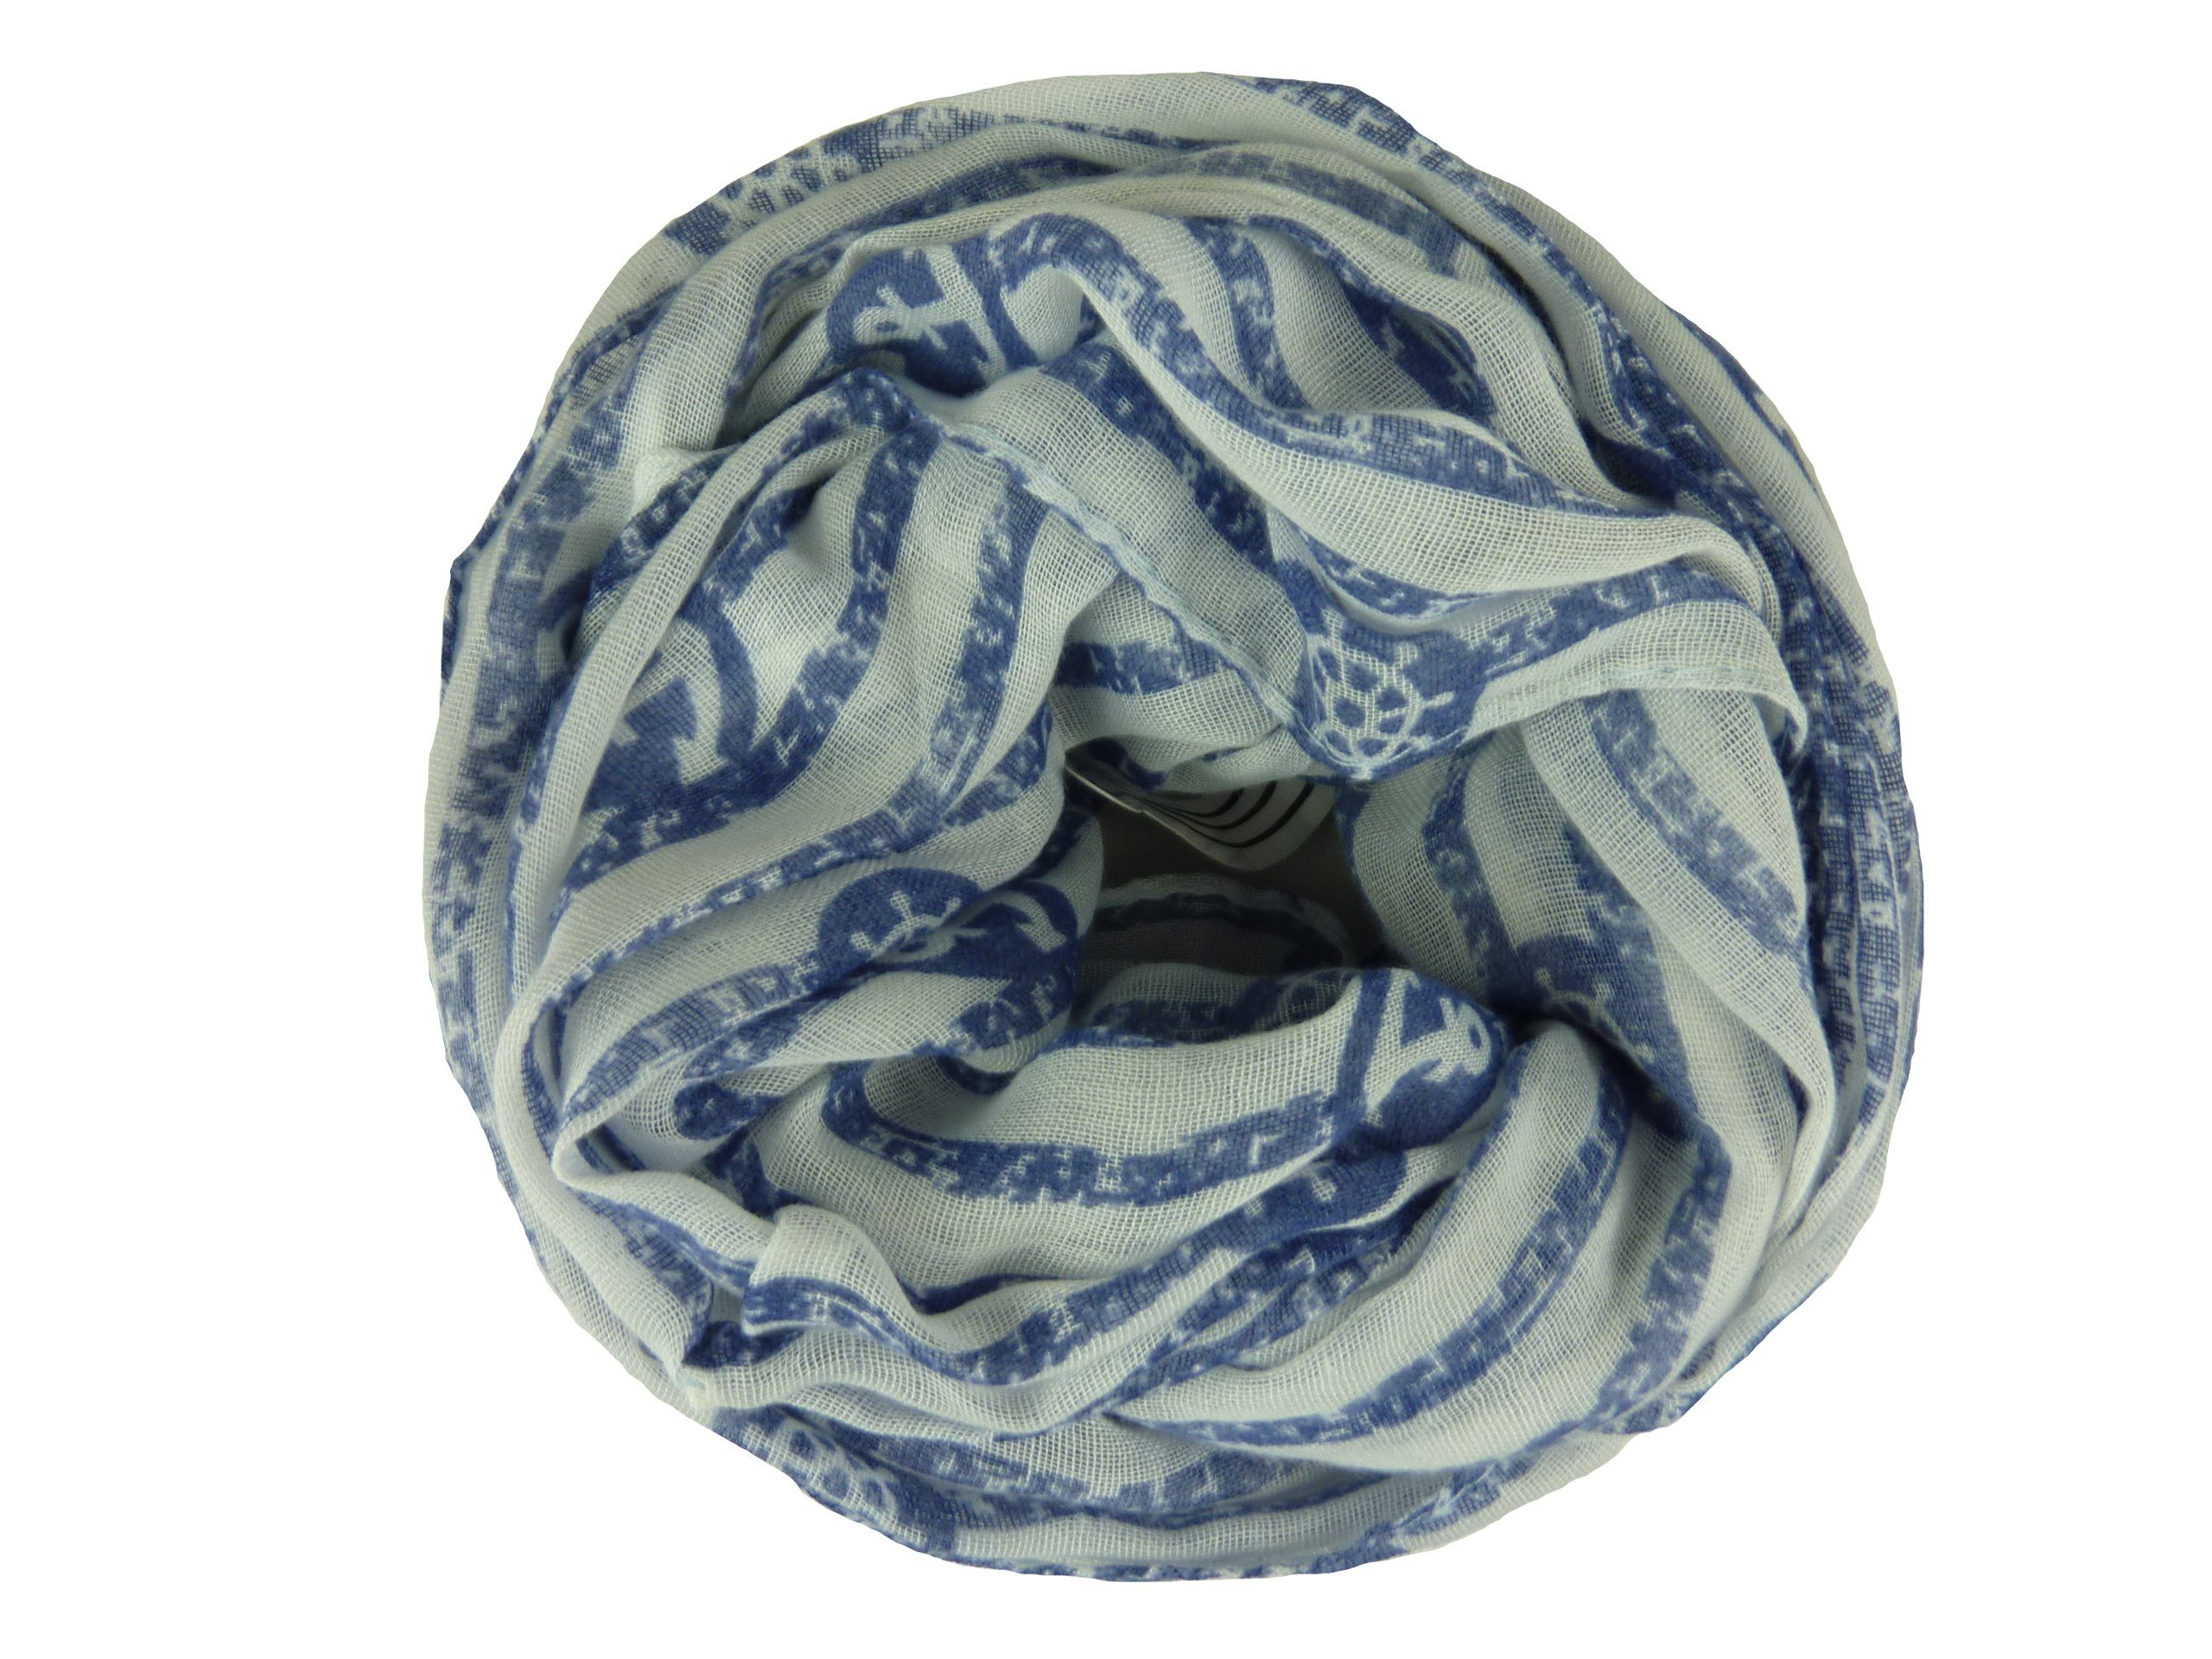 Taschen4life Loop Damen Loop Schal 50% Baumwolle QSWB-52, Anker und Streifen Muster, Schlauchschal weiß/blau